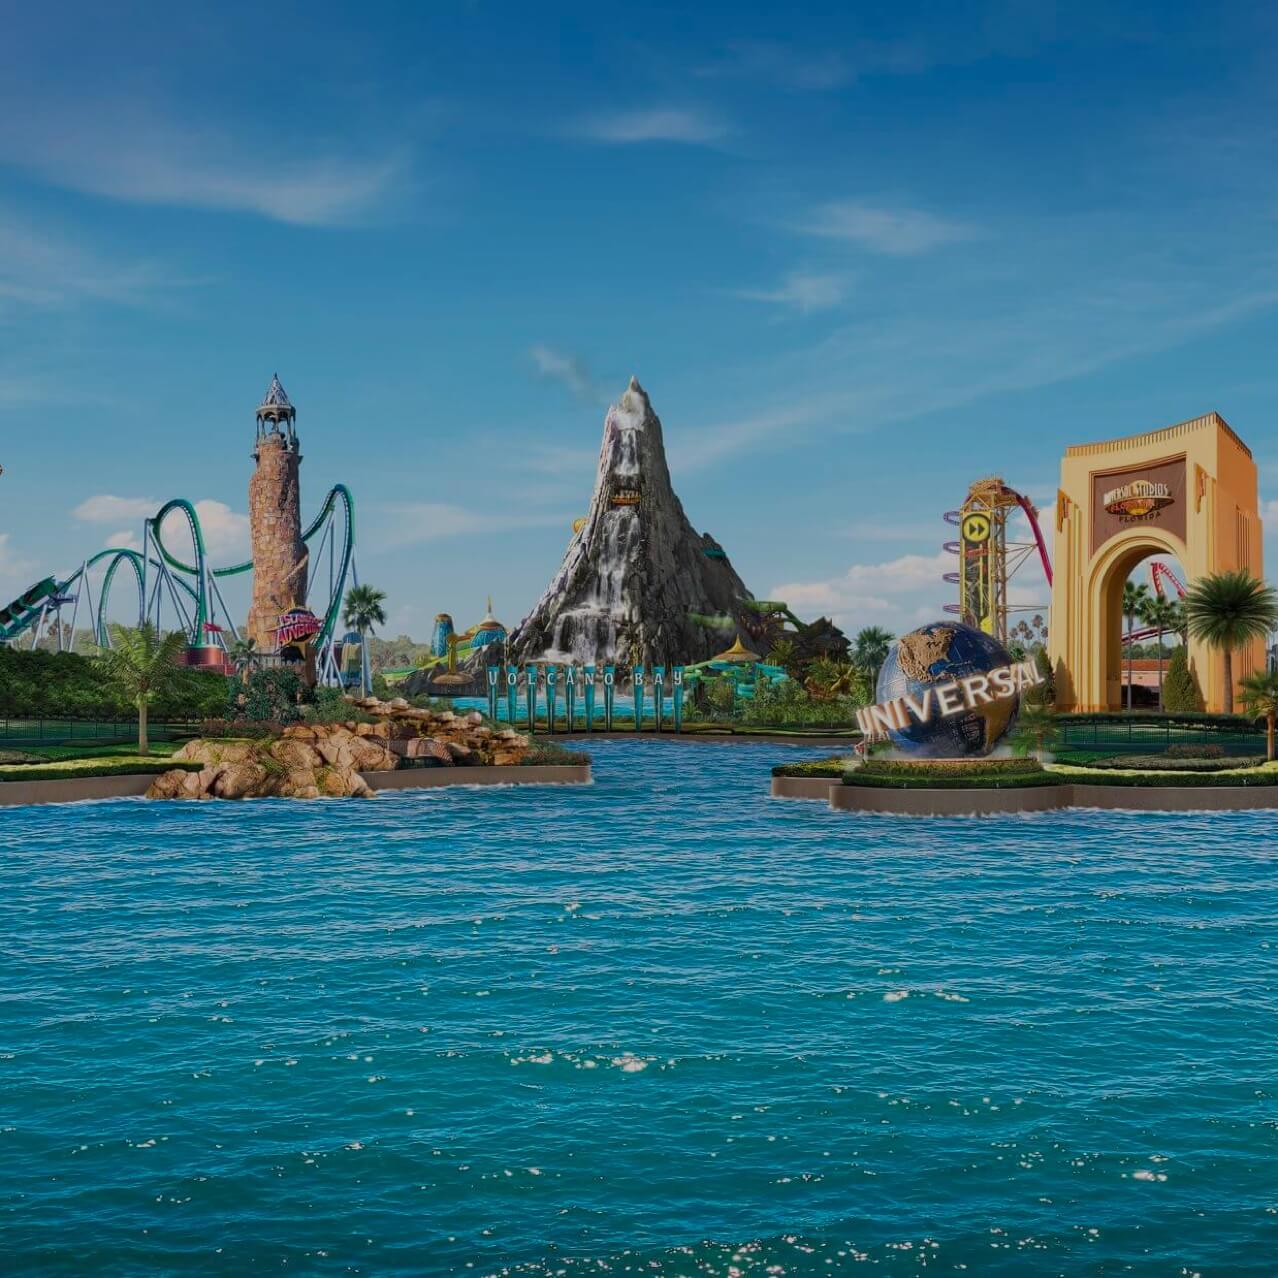 Universal Studio's Islands of Adventure